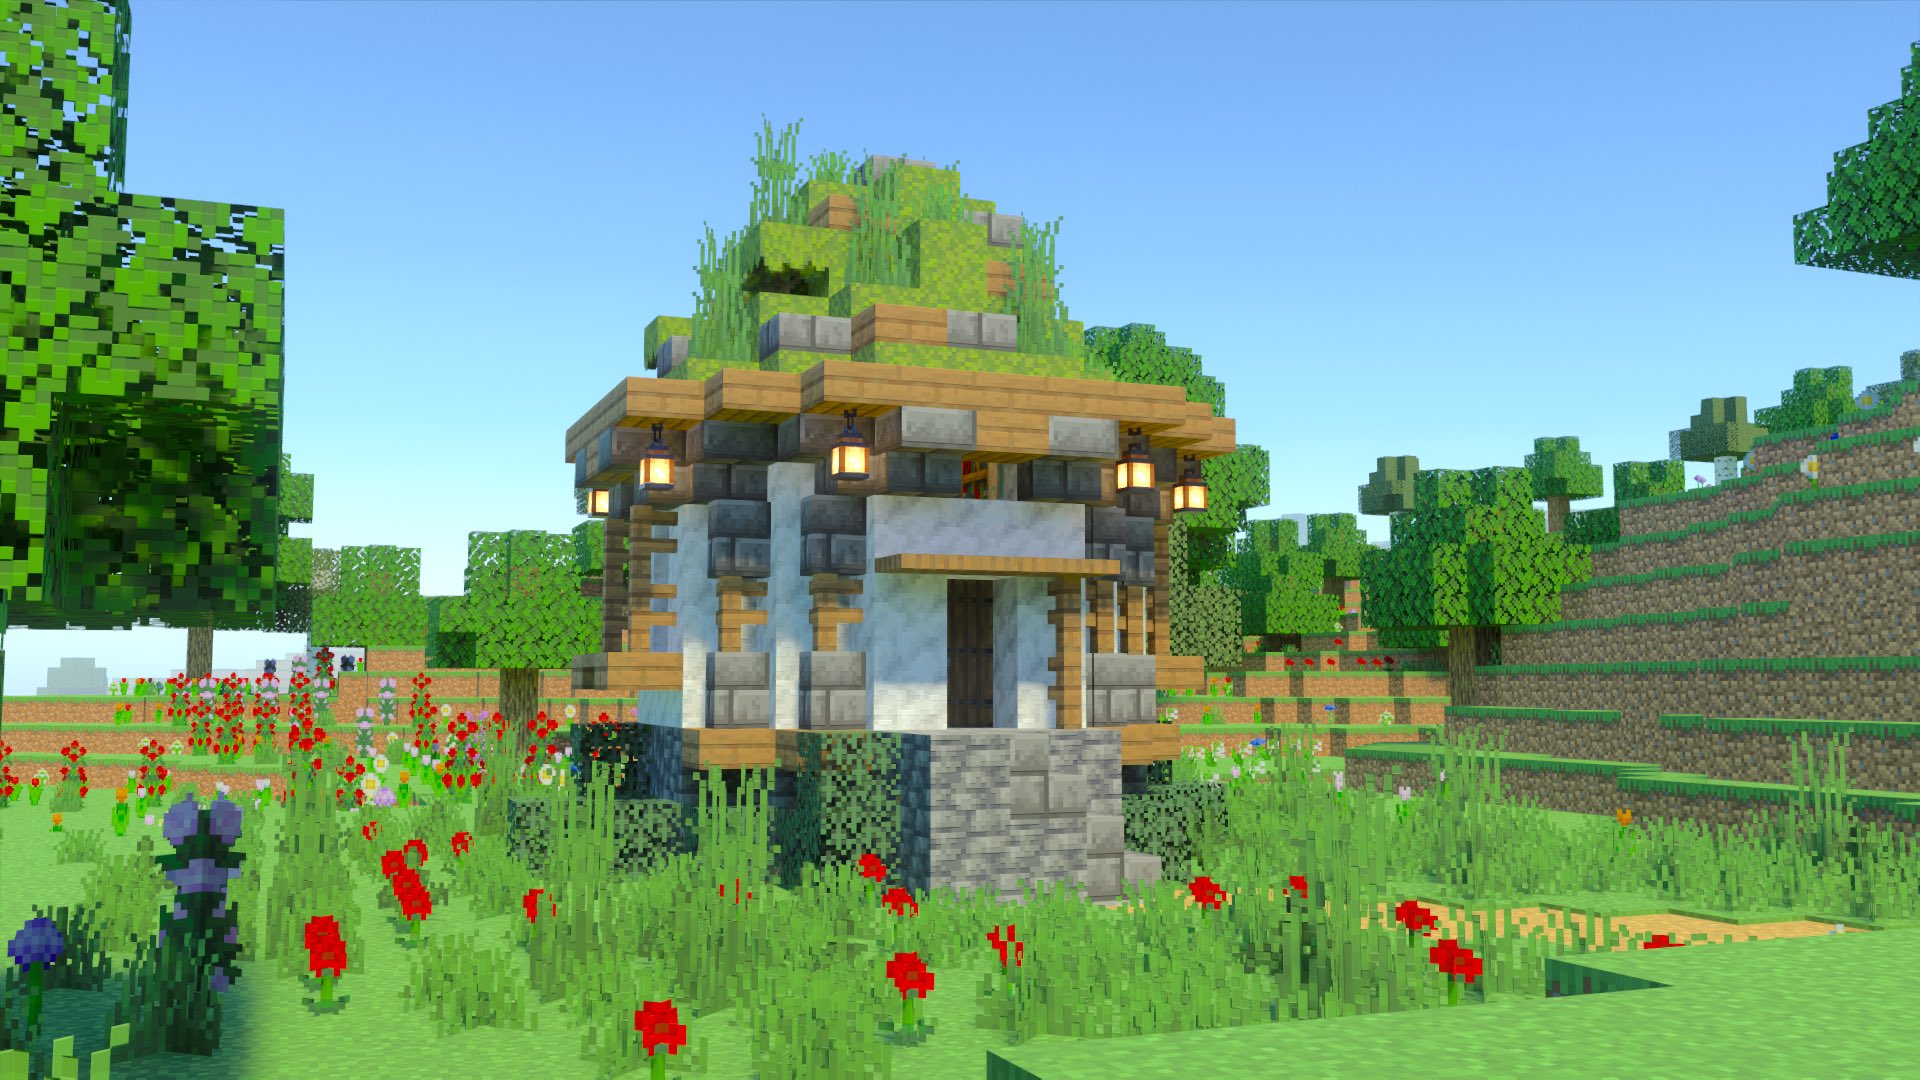 こぐまぷろ Kogumapro 小さい苔ブロックの屋根の家を作ってみました マイクラ Minecraft建築コミュ マインクラフト Minecraft バニラ建築学部 T Co Kjuoqz7iop Twitter